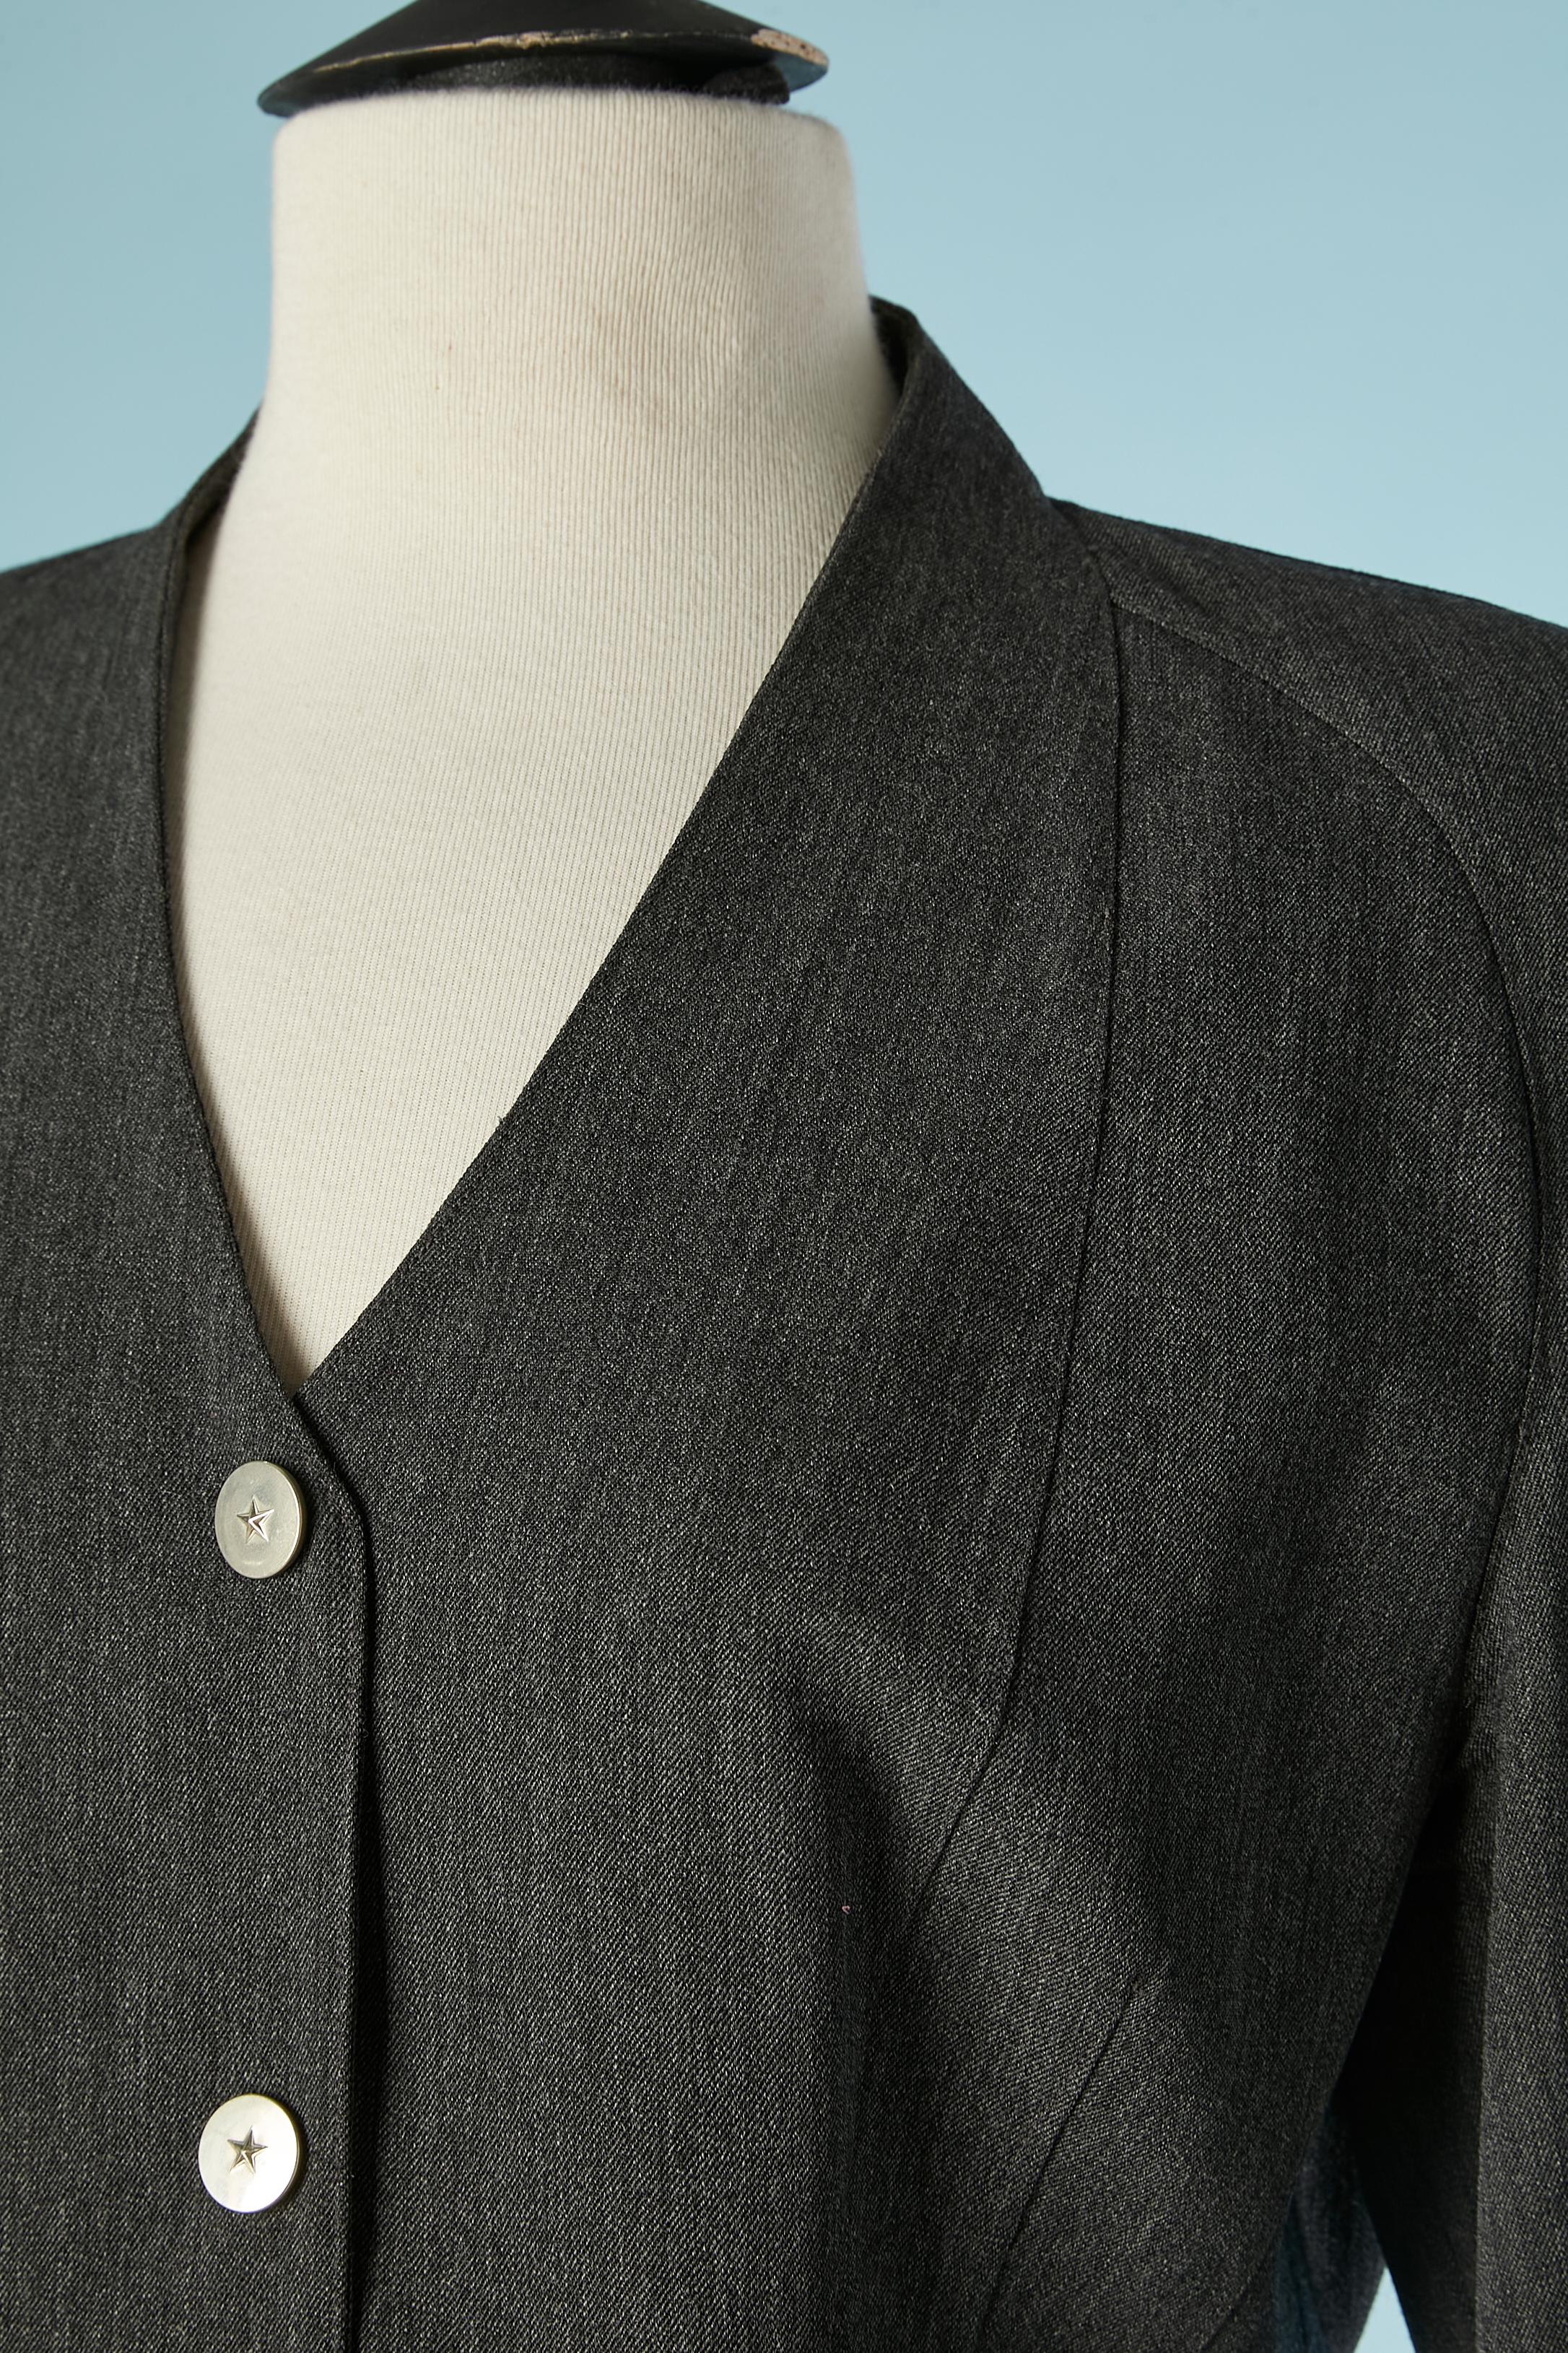 Veste en laine grise à simple boutonnage avec bouton-pression et étoile. Doublure en rayonne. Épaules raglan. 
TAILLE L 